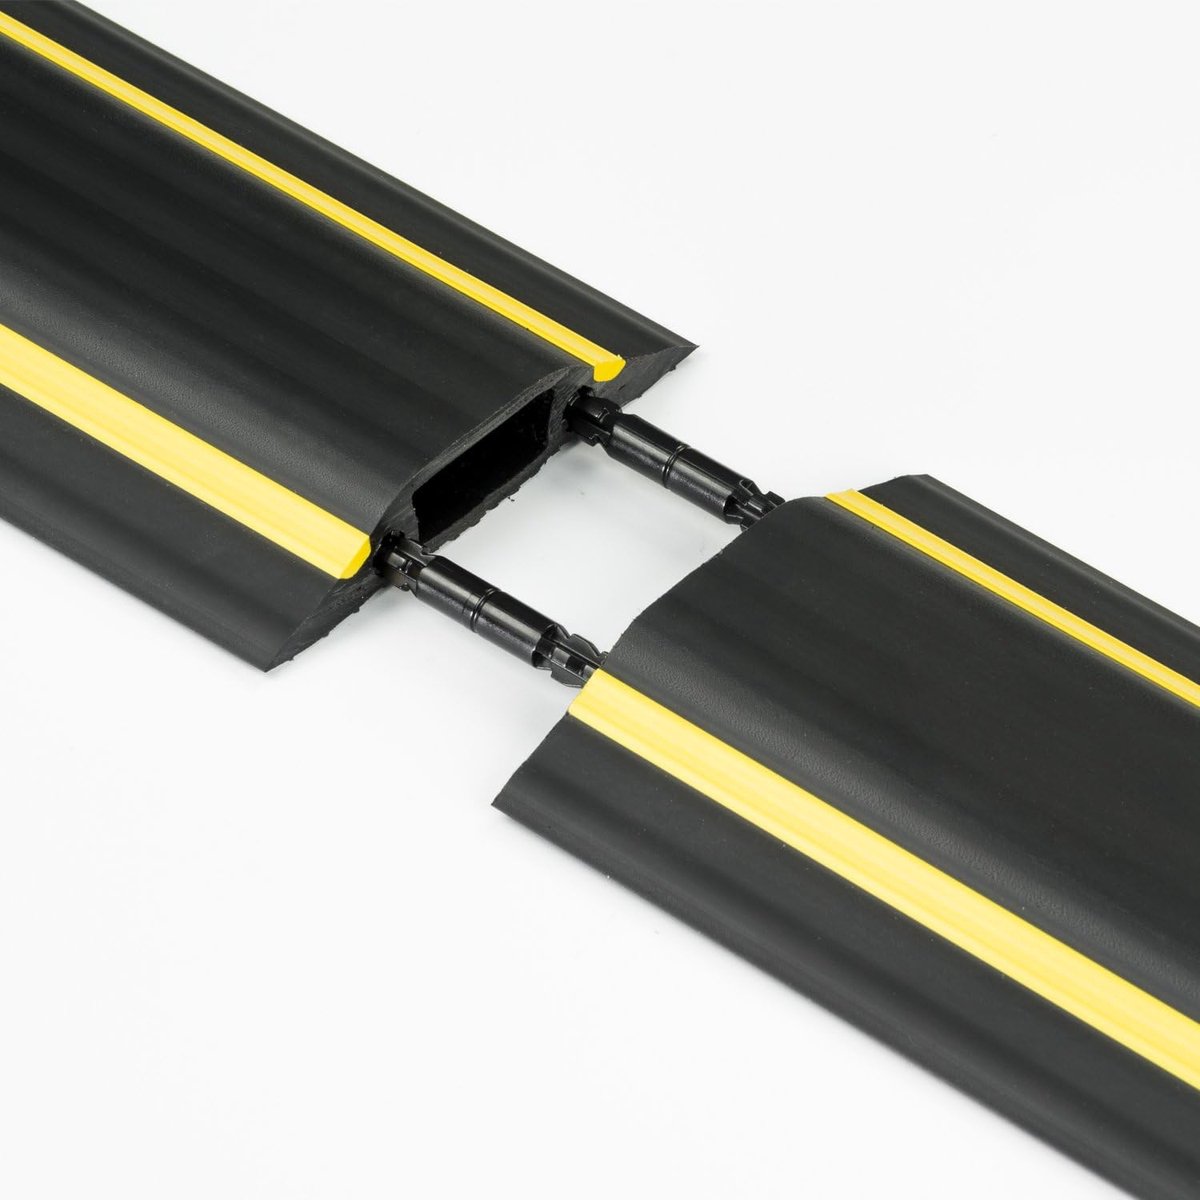 vloerkabelafwerking, FC83H middelzware kabelafwerking, beschermt kabels en voorkomt struikelen, kabelhouder, kabelmanagement - 1,8 meter (L) - kabeldoorvoer 30 mm (B) x 10 mm (H) - Zwart en geel